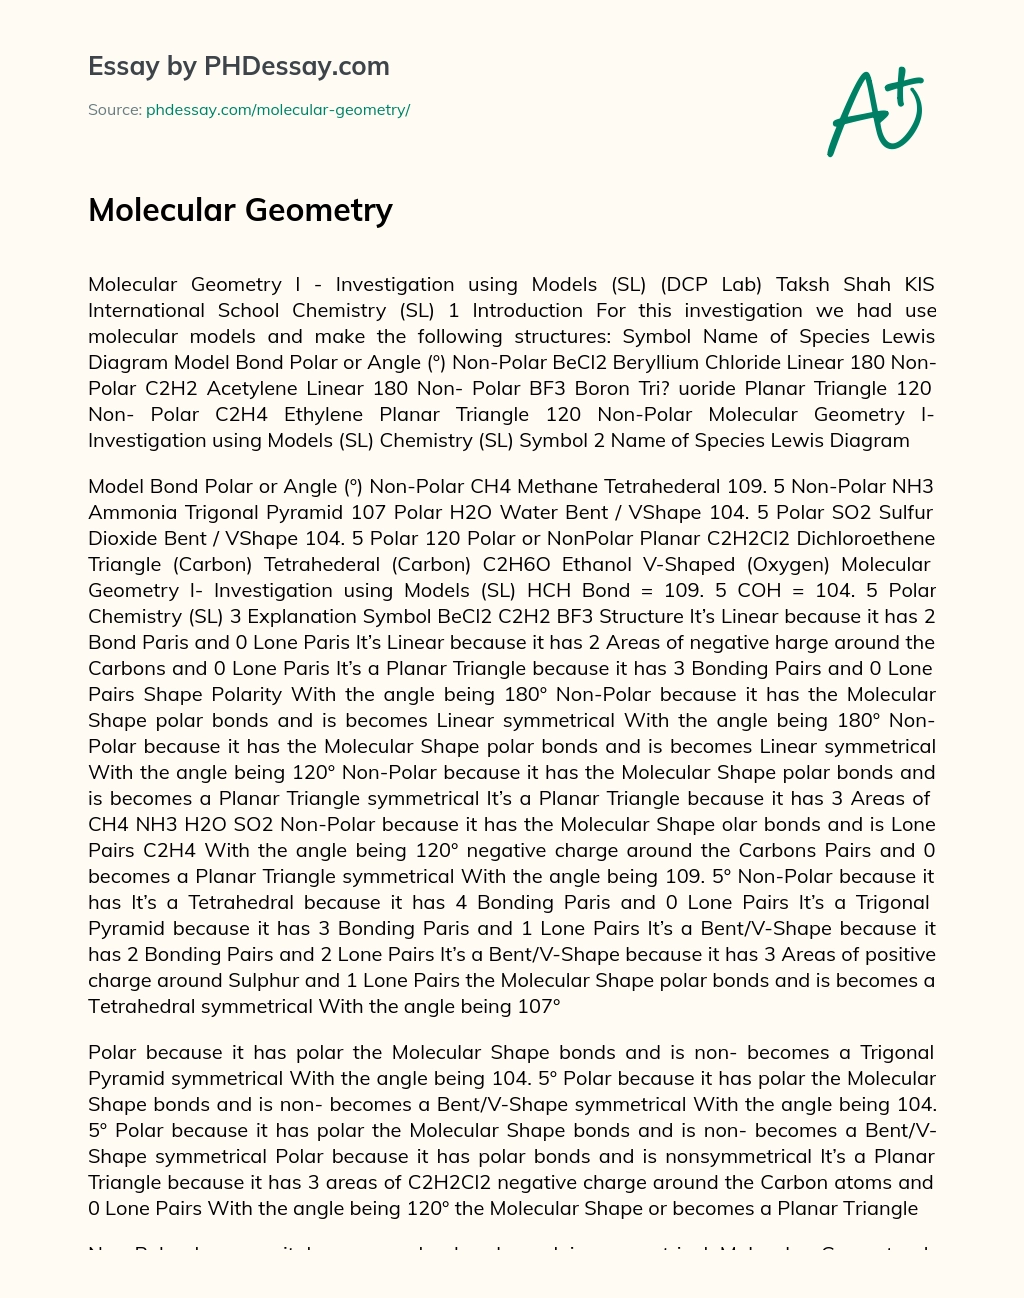 Molecular Geometry essay